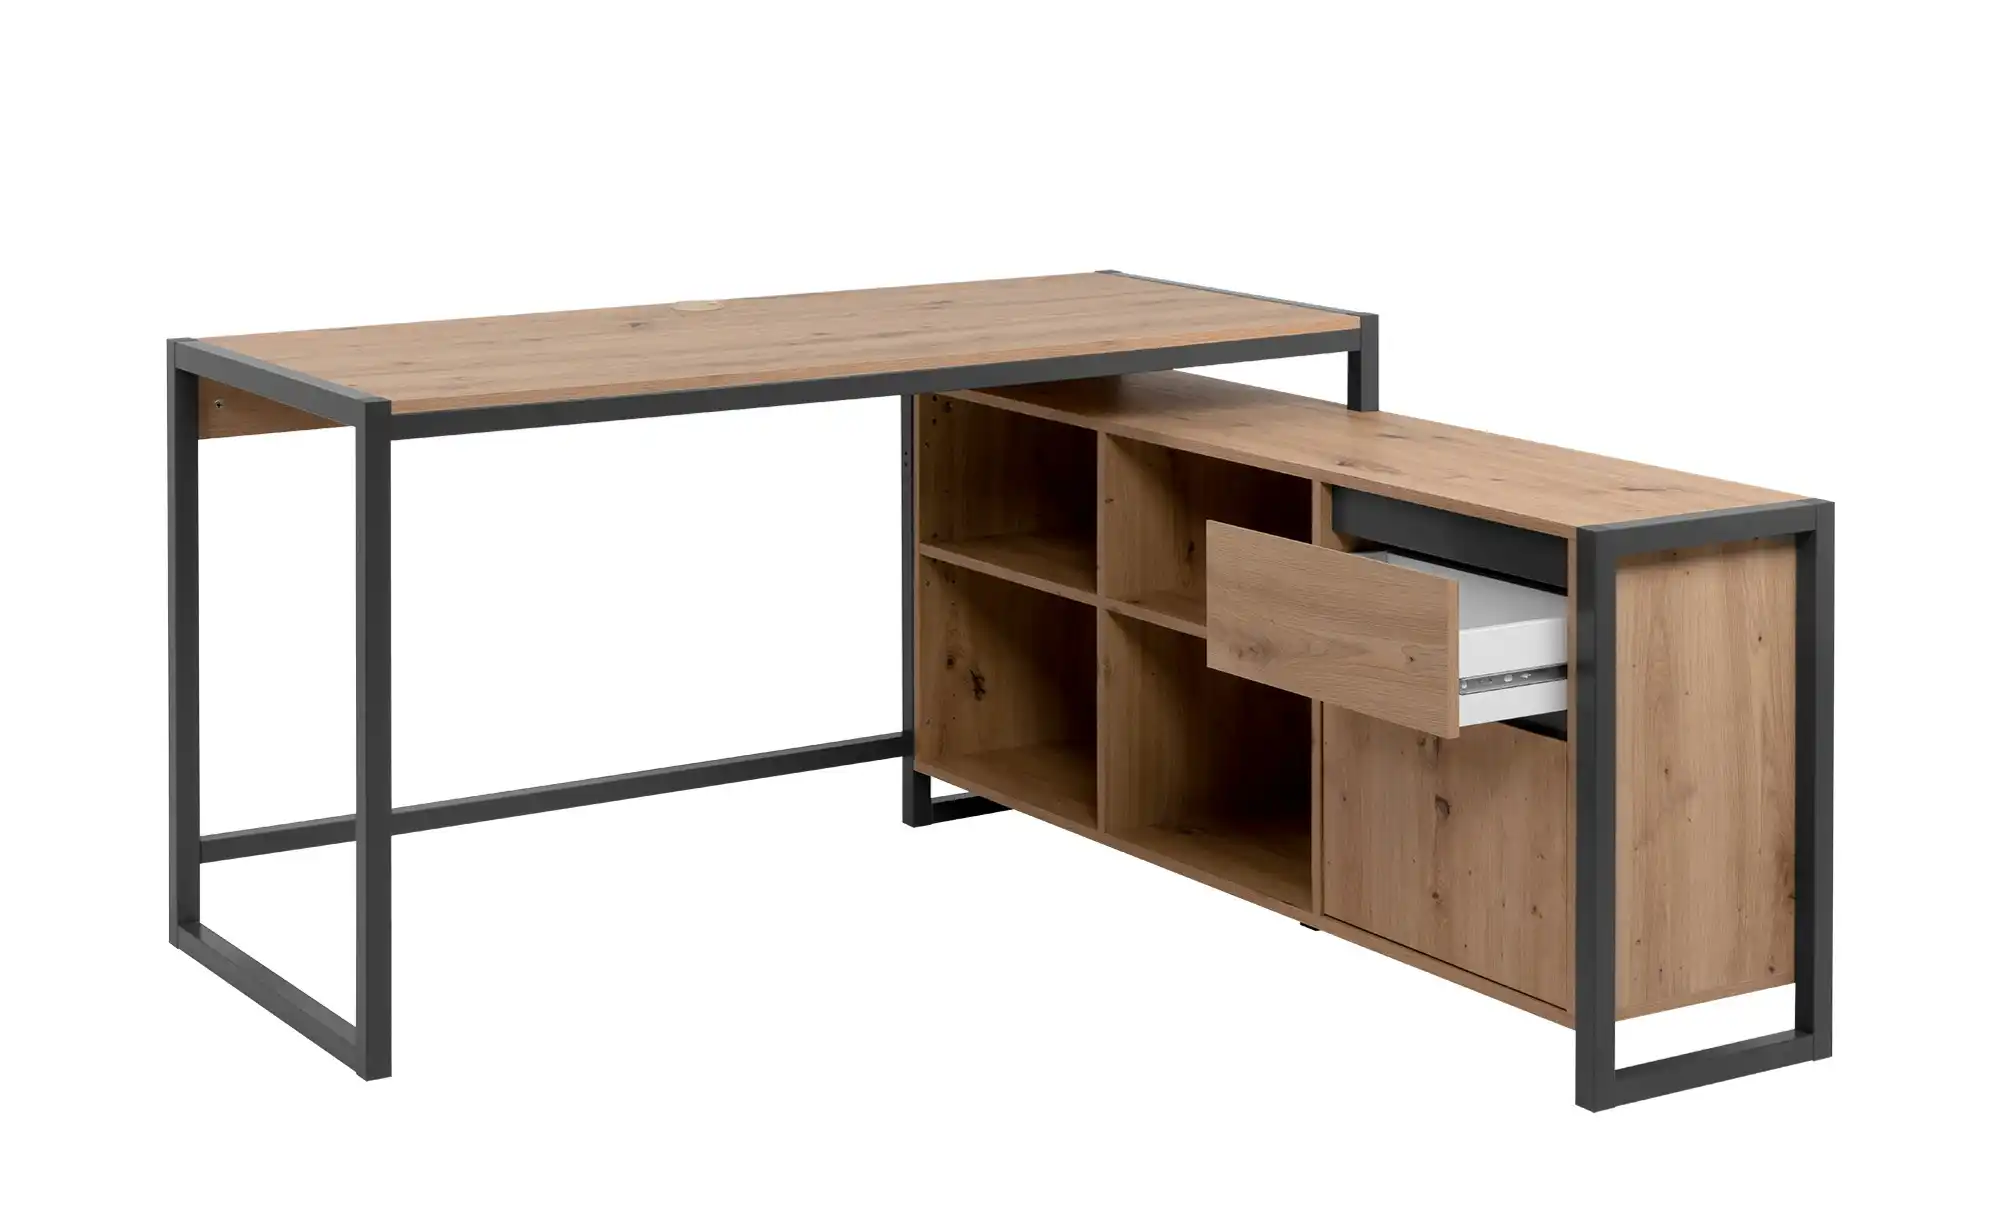 Eck-Schreibtisch - Bei Möbel online Kraft kaufen